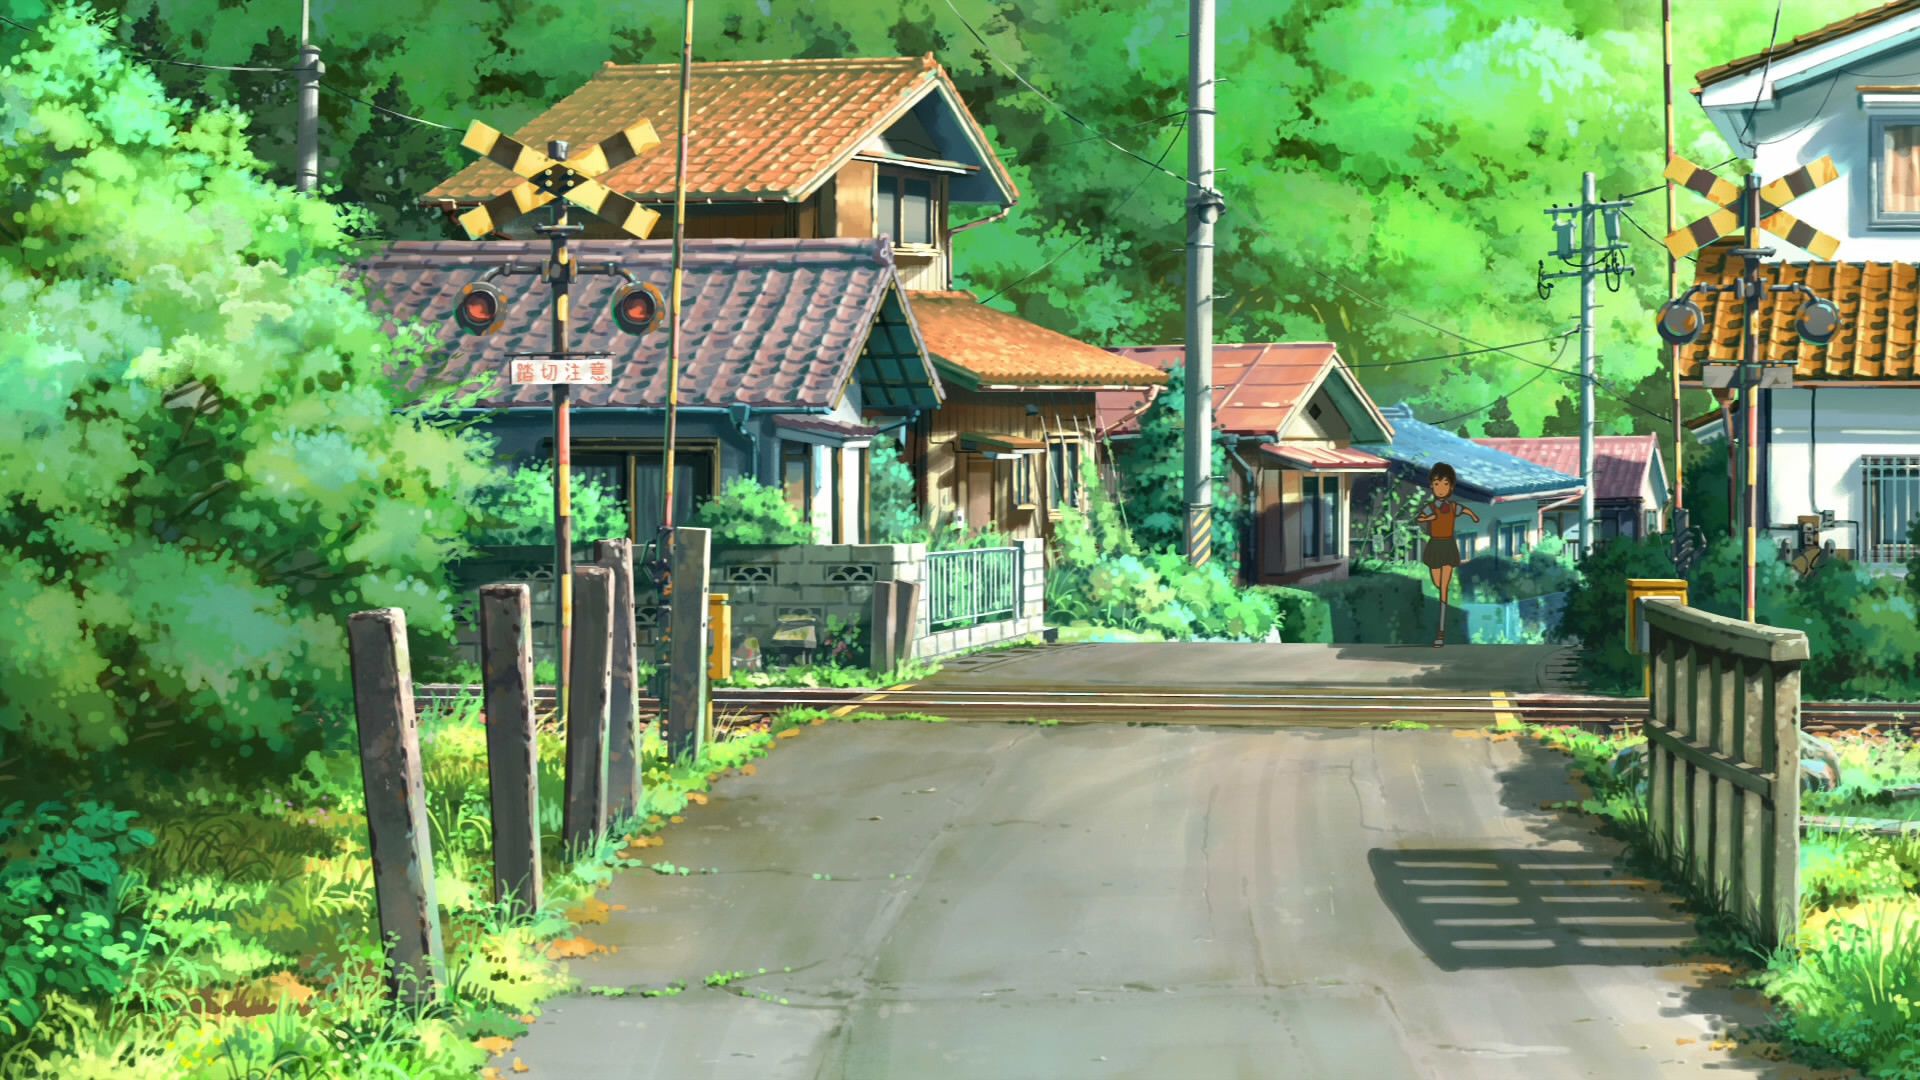 Anime House Wallpaper